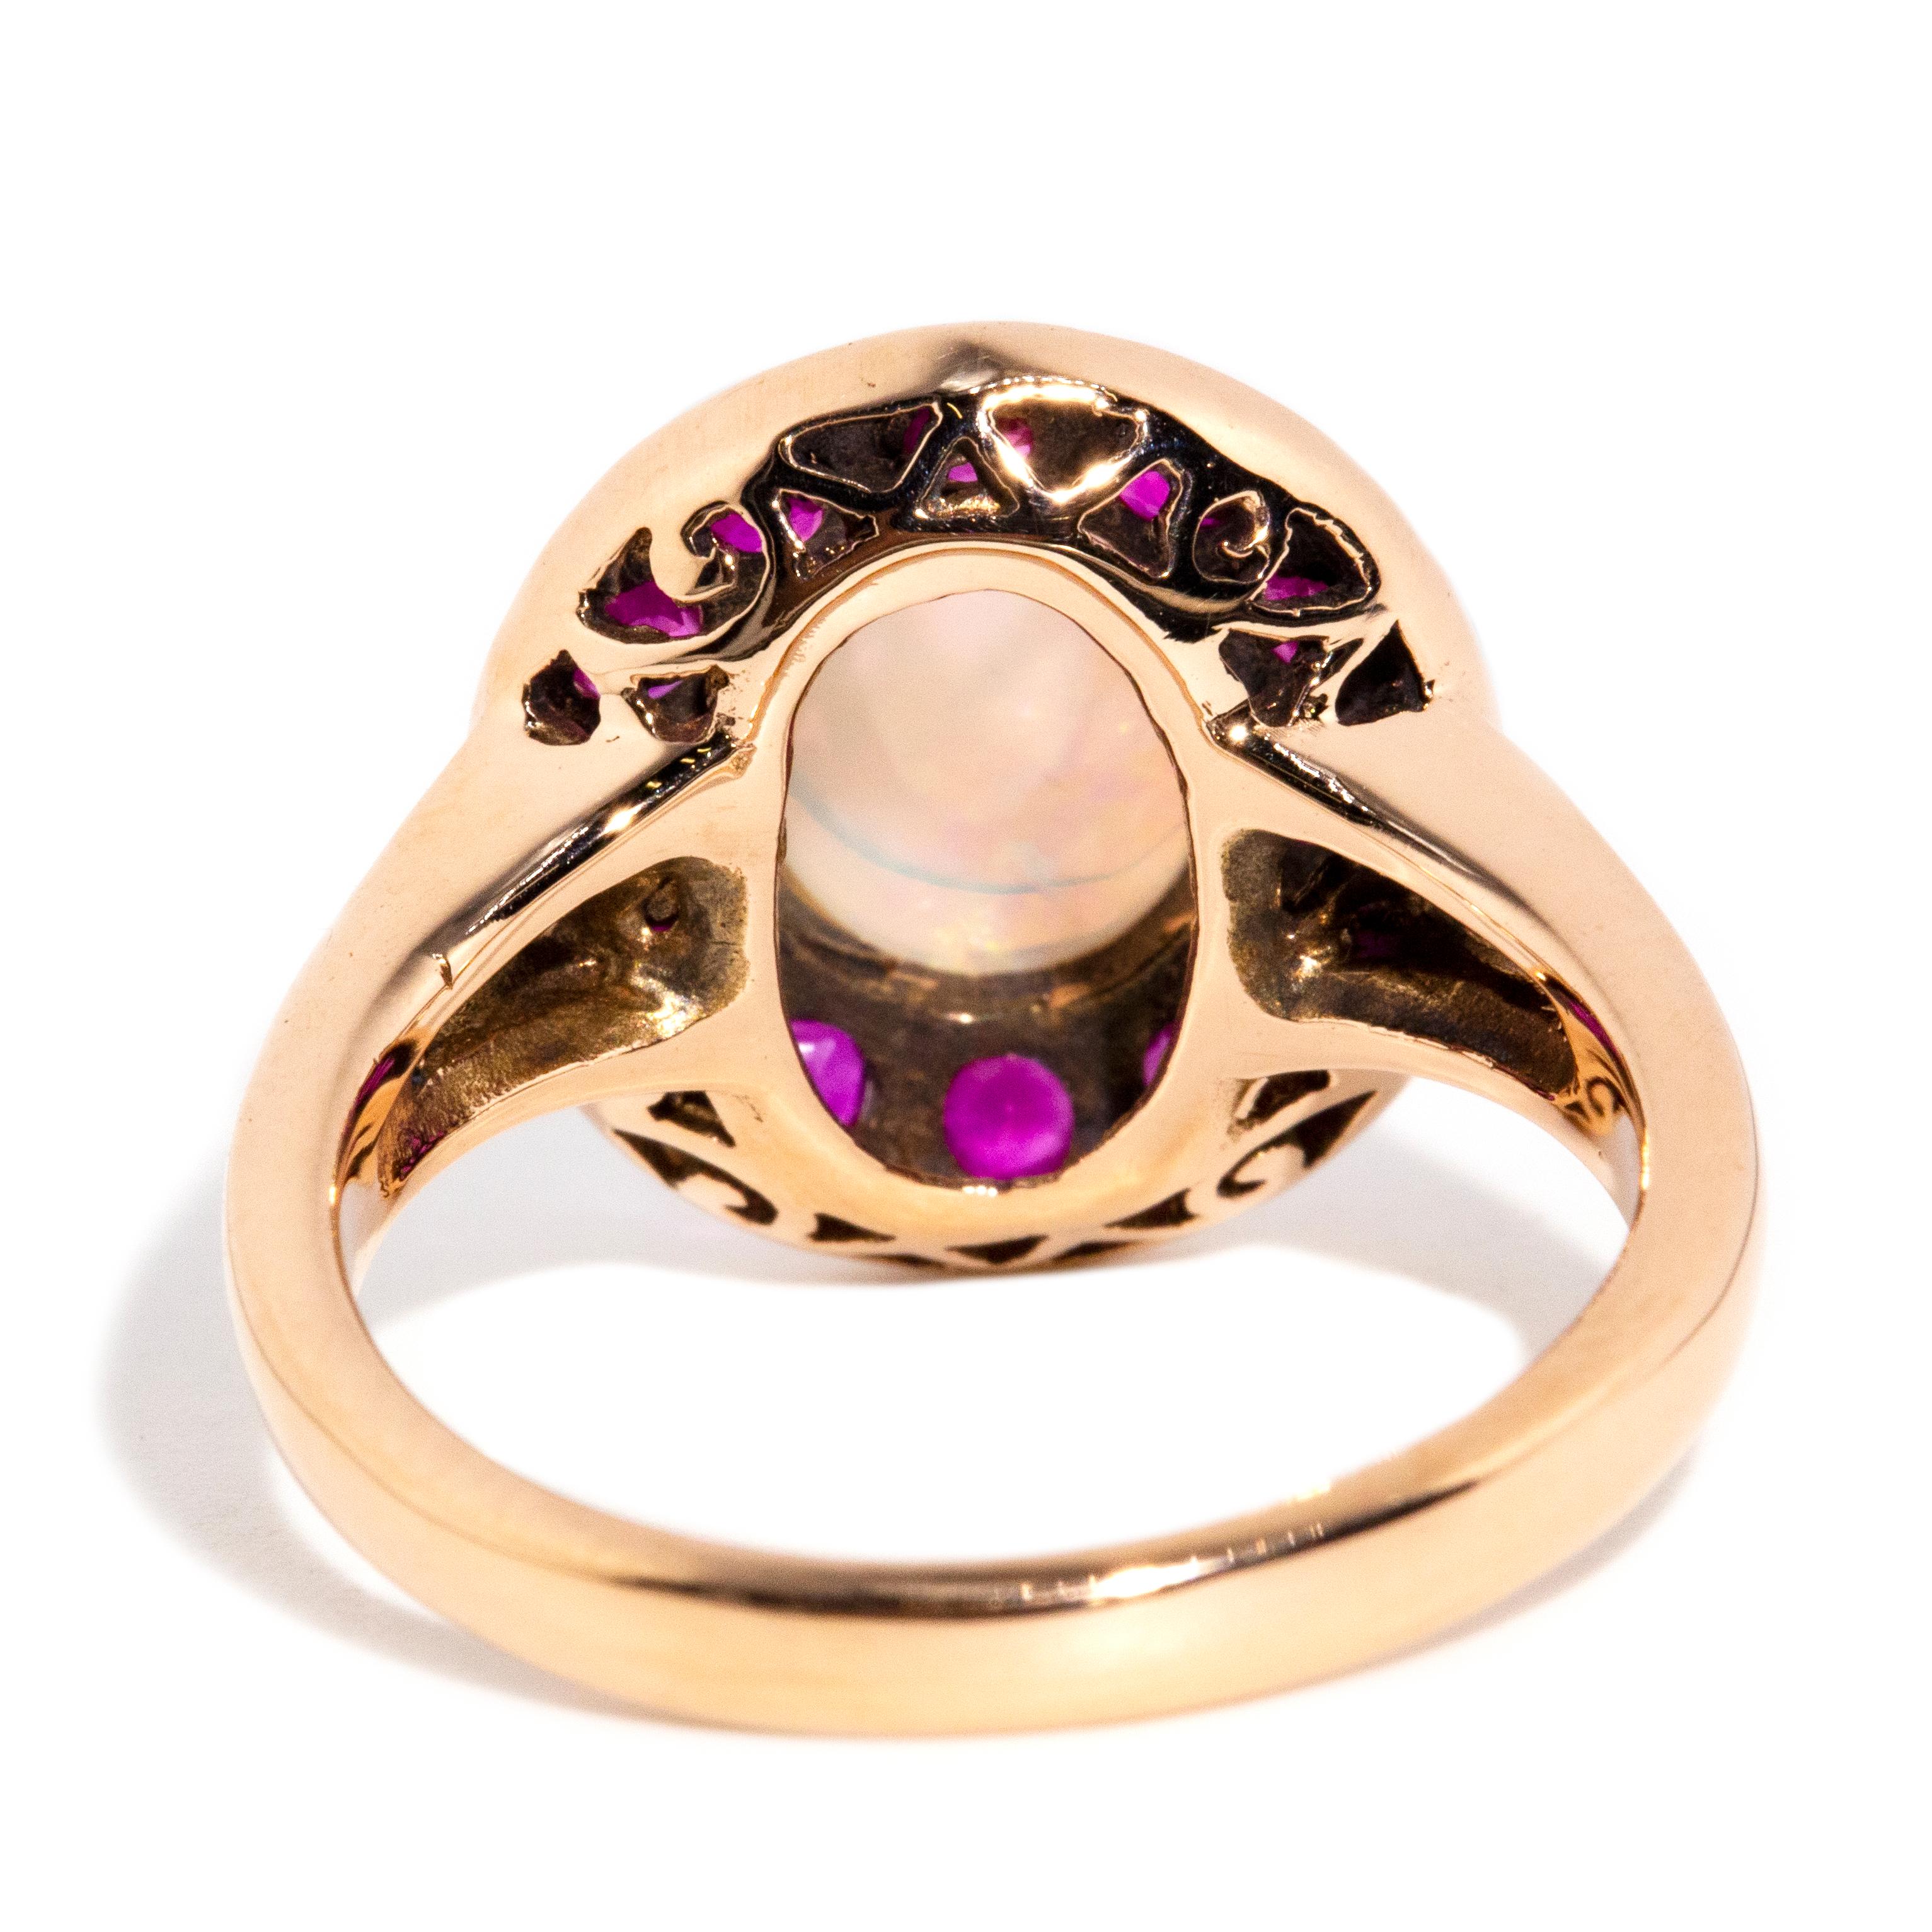 Vintage inspirierter Ring aus 9 Karat Gelbgold mit massivem Opal, Cabochon und lila-rotem Rubin 3